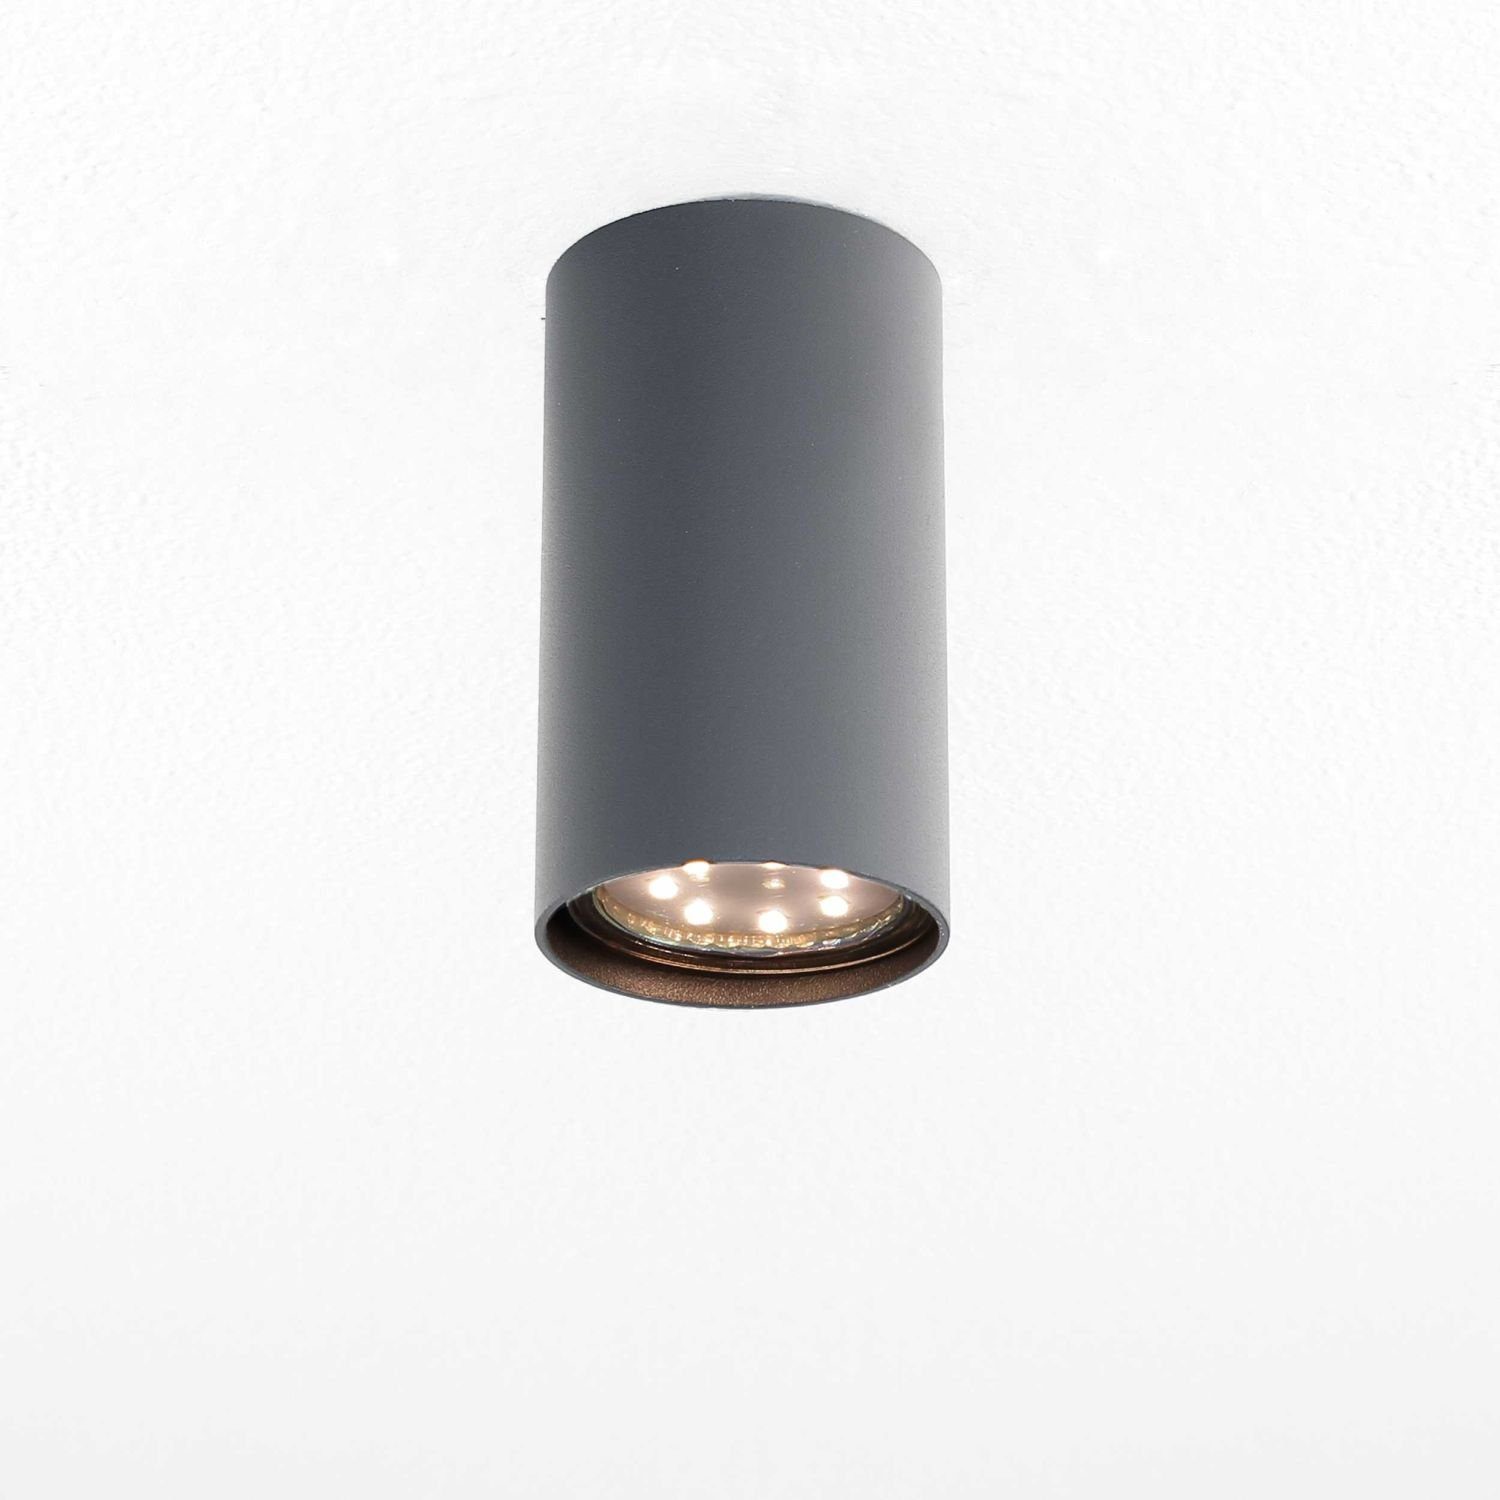 Deckenlampe Anthrazit Lampe Flur Wohnzimmer Spot EYE, rund Metall Leuchtmittel, Deckenleuchte ohne Licht-Erlebnisse